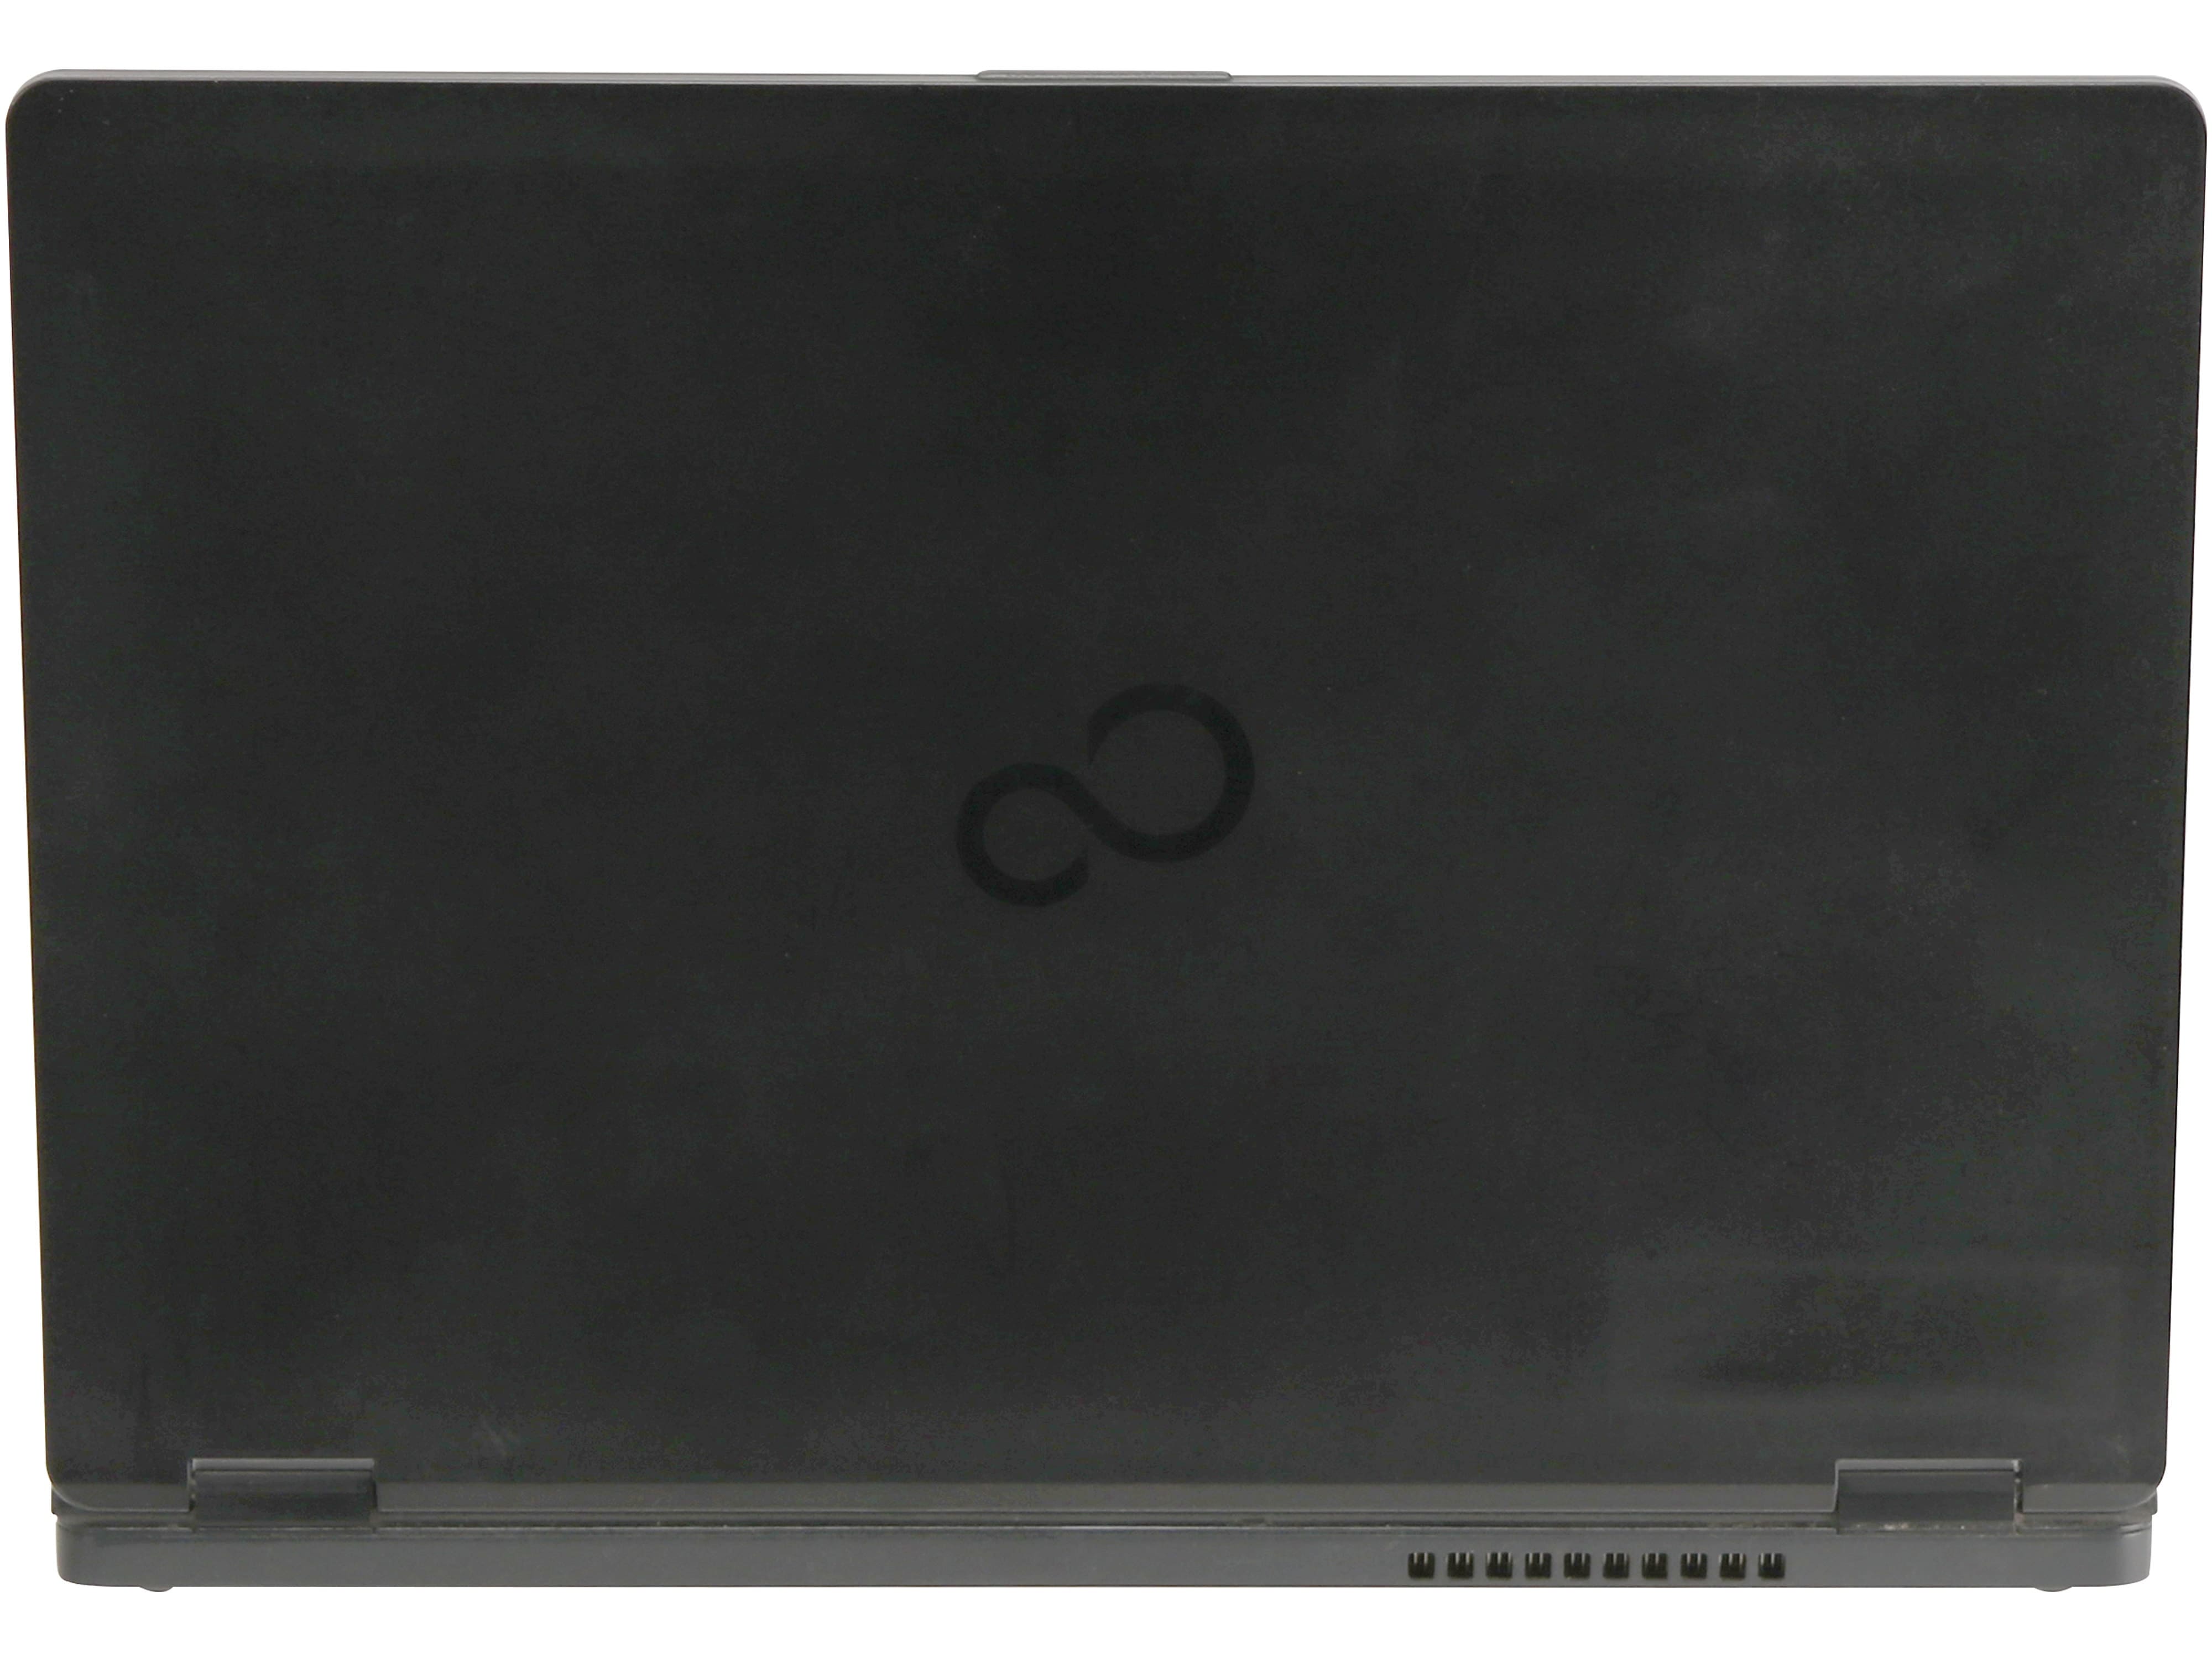 FUJITSU Notebook Lifebook U727, 12,5", i5, 8GB, 256 GB SSD, Win10Pro, gebraucht